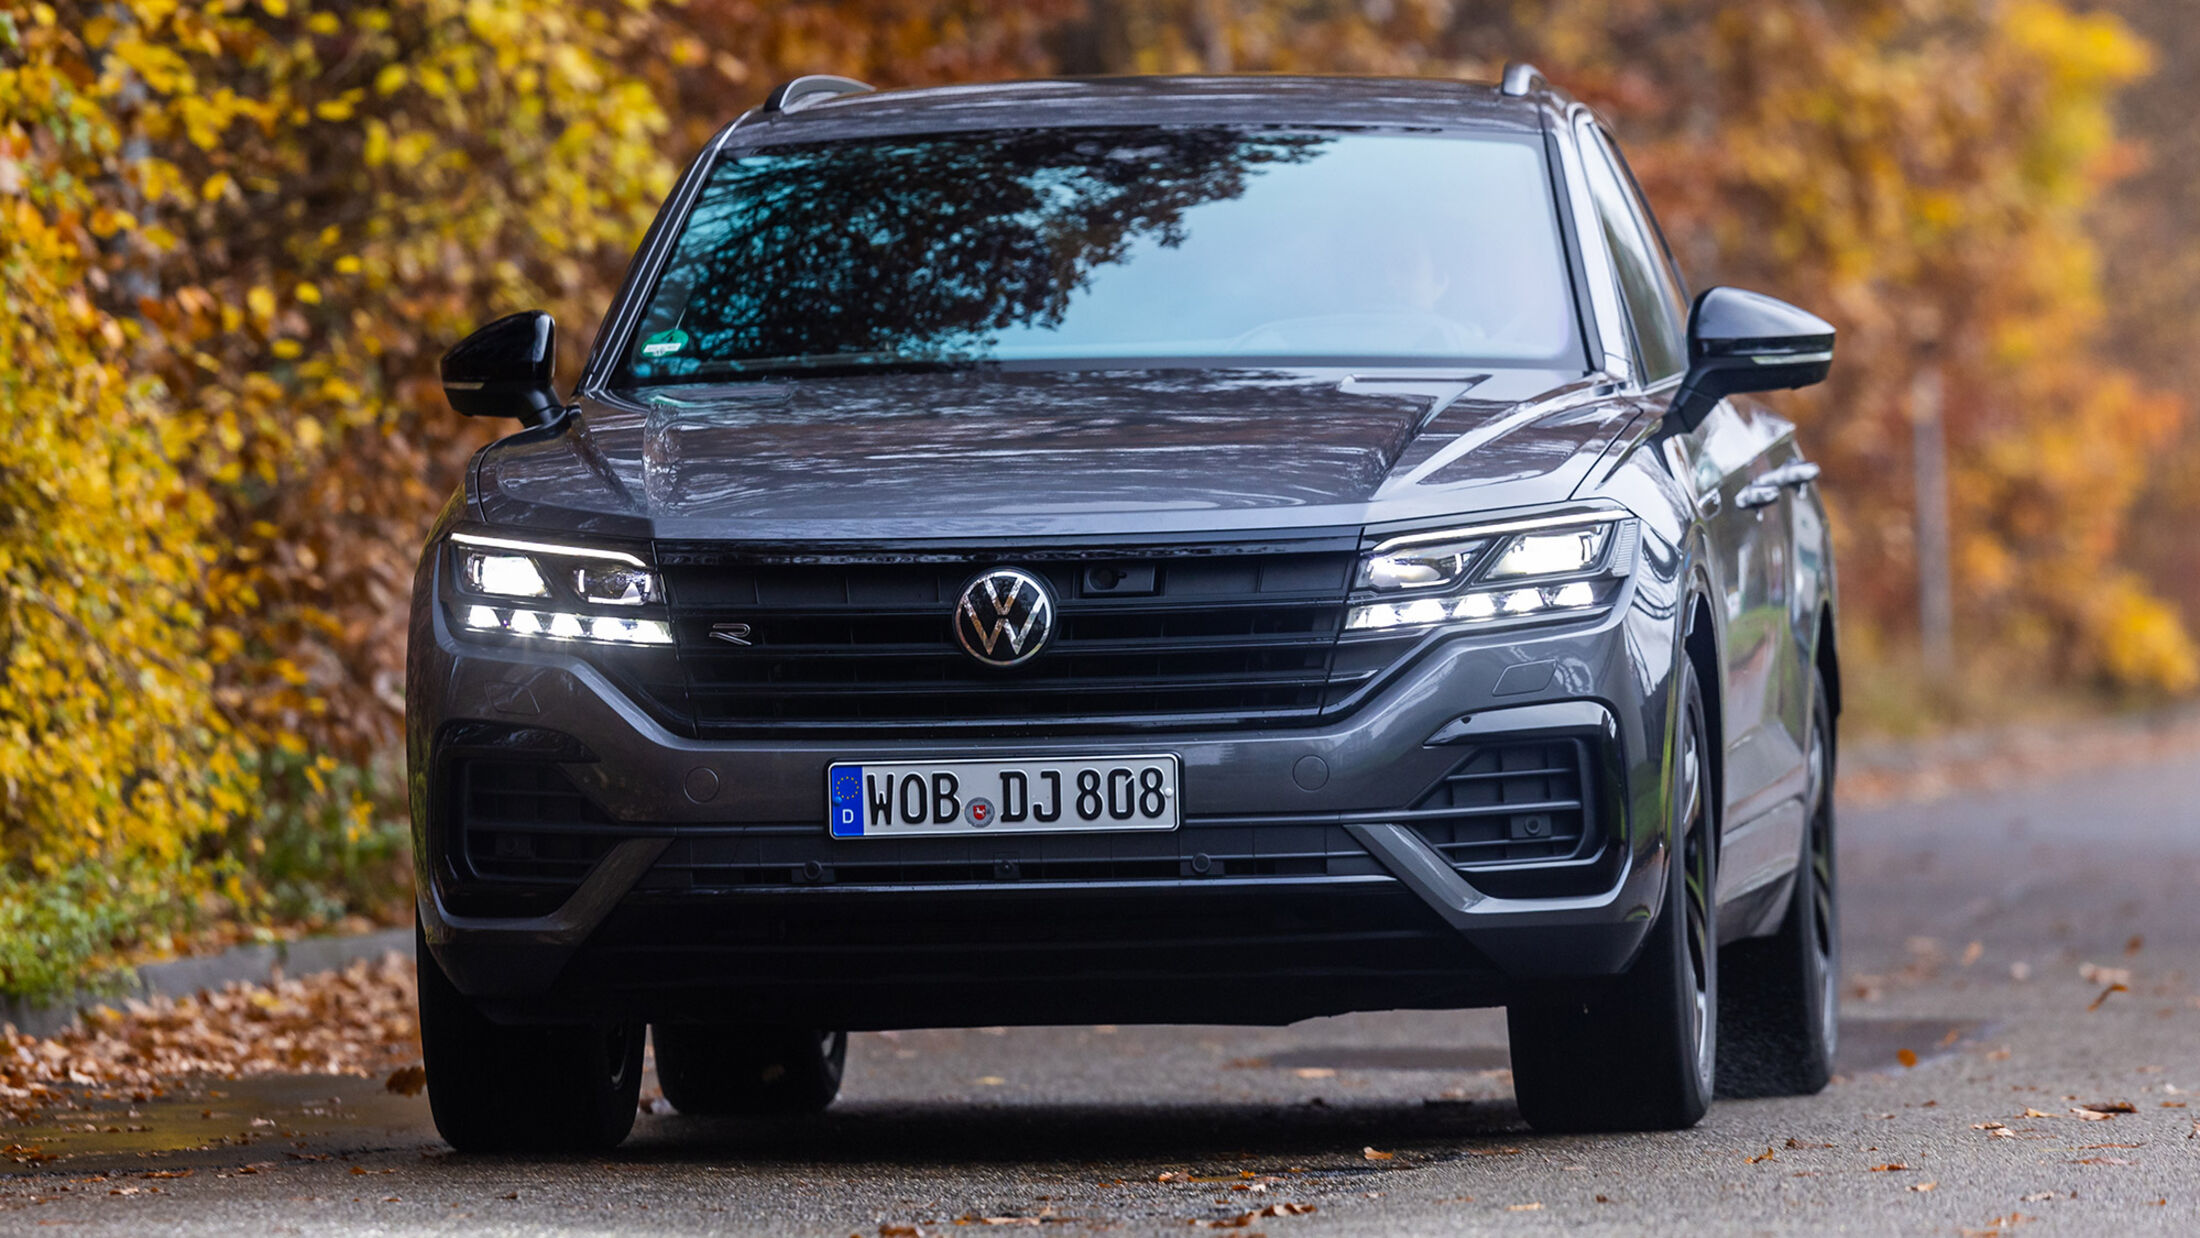 Test : Der neue VW Touareg strebt nach einem Langstrecken